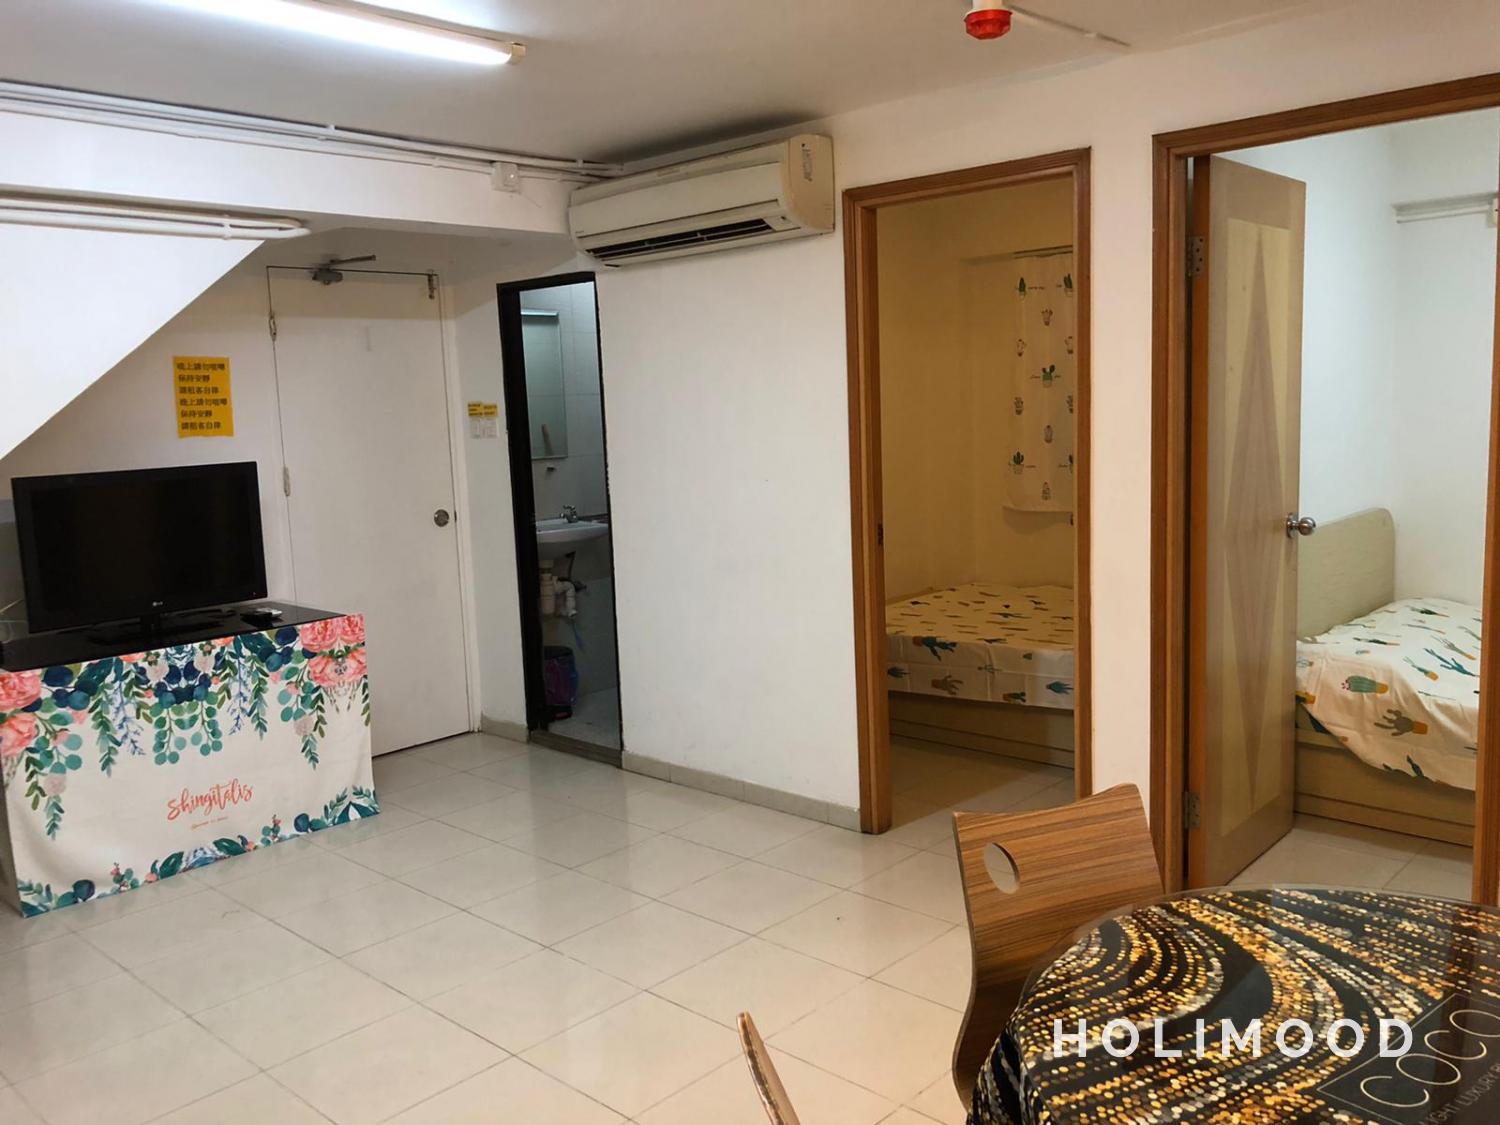 HO22A 兩房一廳度假屋（可與鄰房相通） - Holimood - 香港一站式特色露營、酒店、渡假屋、手作體驗、遊艇預訂平台